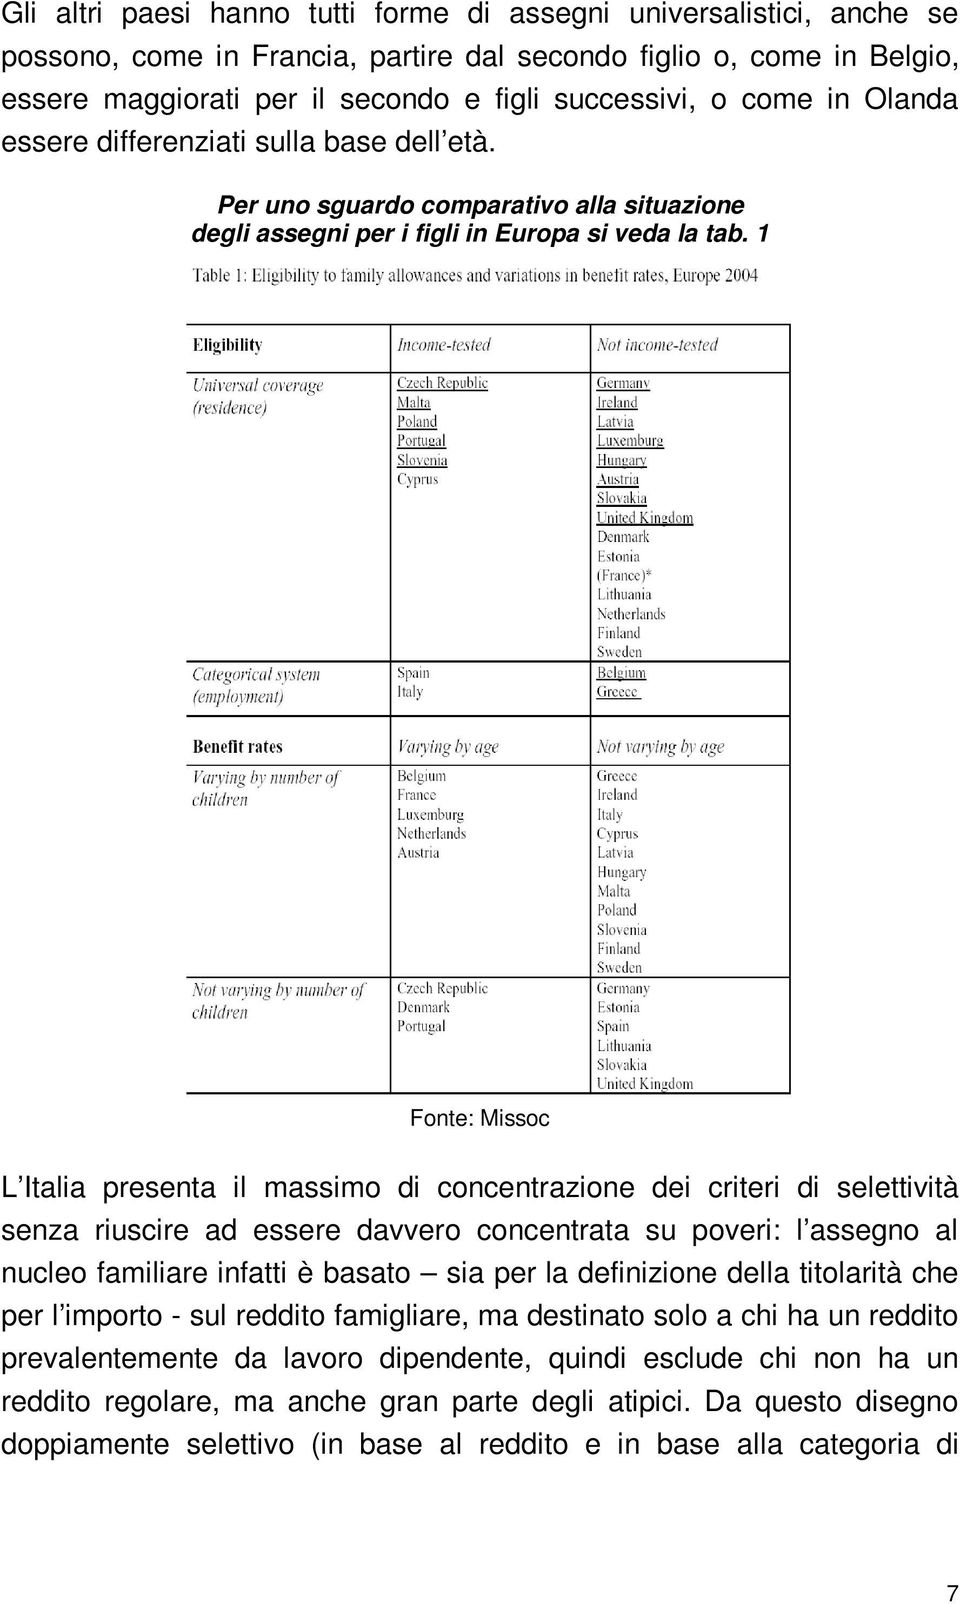 1 Fonte: Missoc L Italia presenta il massimo di concentrazione dei criteri di selettività senza riuscire ad essere davvero concentrata su poveri: l assegno al nucleo familiare infatti è basato sia